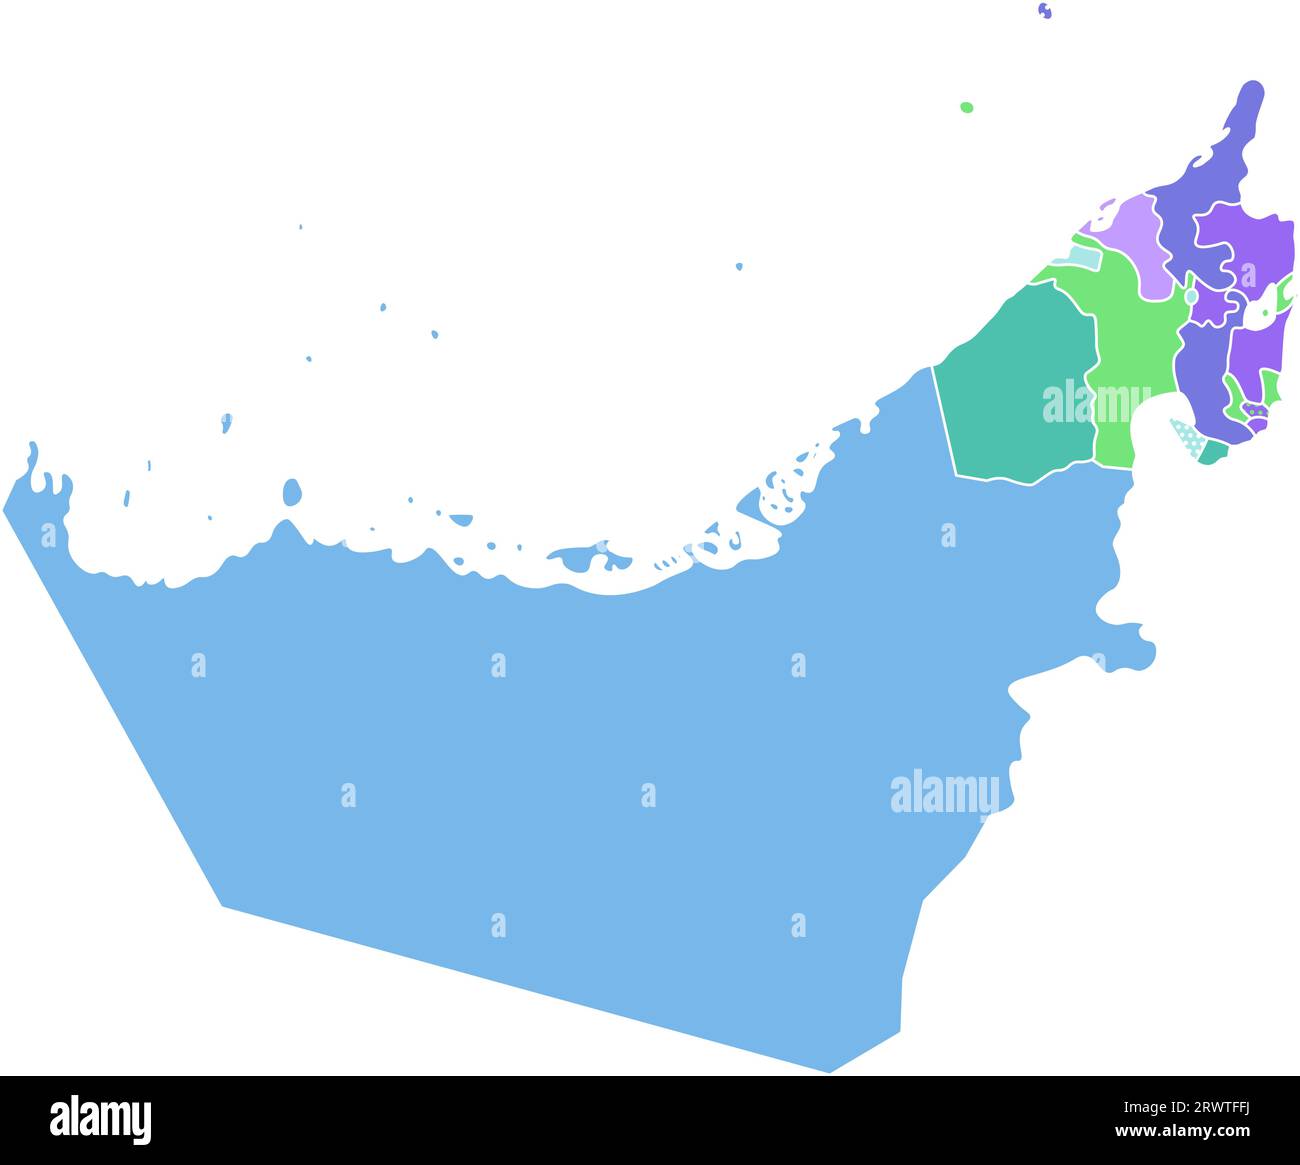 Illustrazione colorata con isolamento vettoriale con silhouette sulla terraferma degli Emirati Arabi Uniti (UAE) e sui confini degli emirati Arabi Uniti. Sfondo bianco Illustrazione Vettoriale